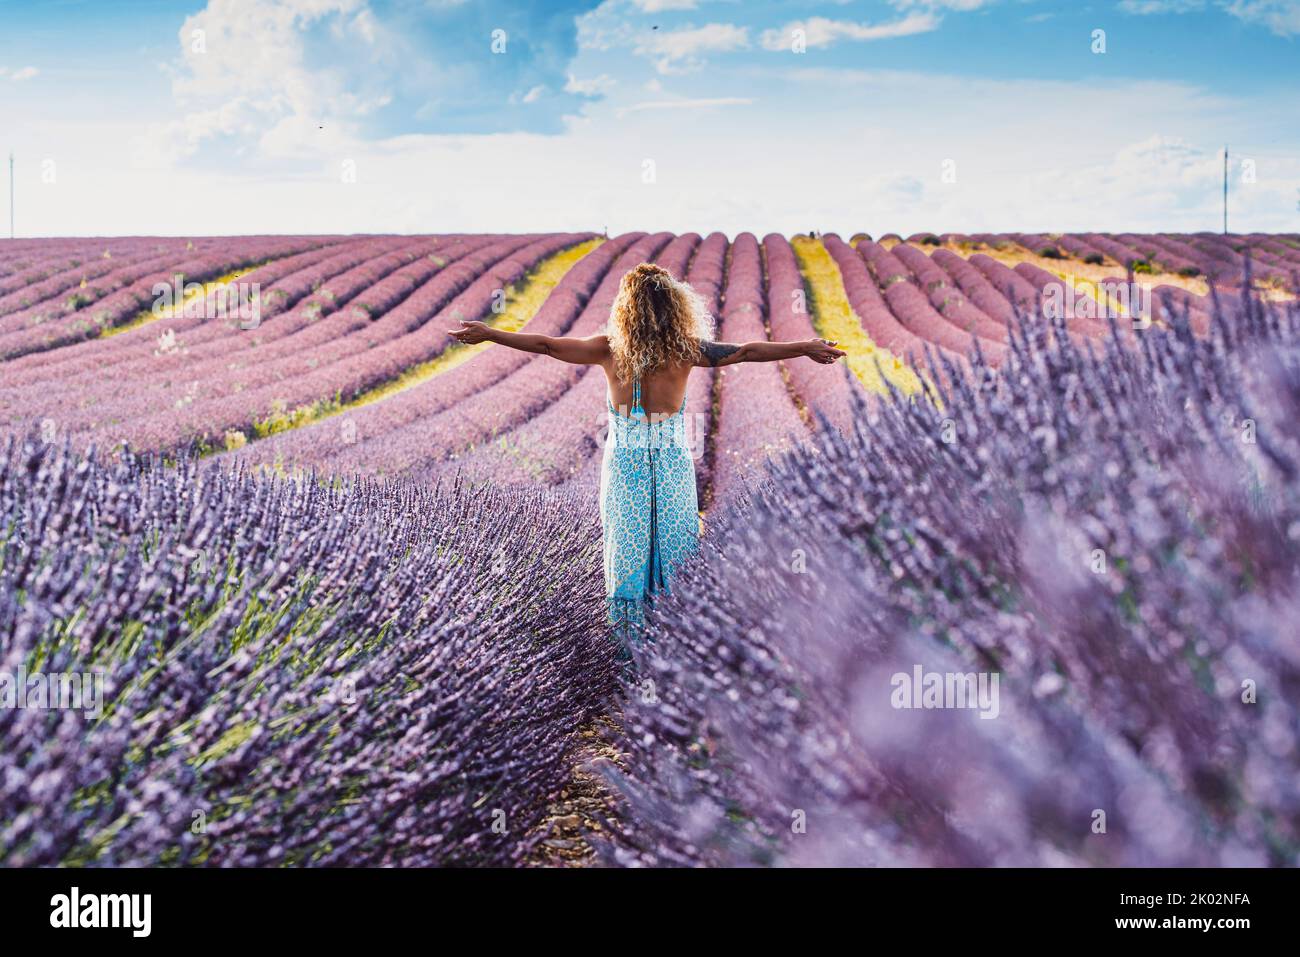 Glückliche und freie Reisende Frau, die Arme ausstreckt und genießen Sie die erstaunliche Naturlandschaft inmitten eines violetten Lavendelfeld Blumen malerischen Ziel. Konzept von Menschen und Reise-Lifestyle Stockfoto